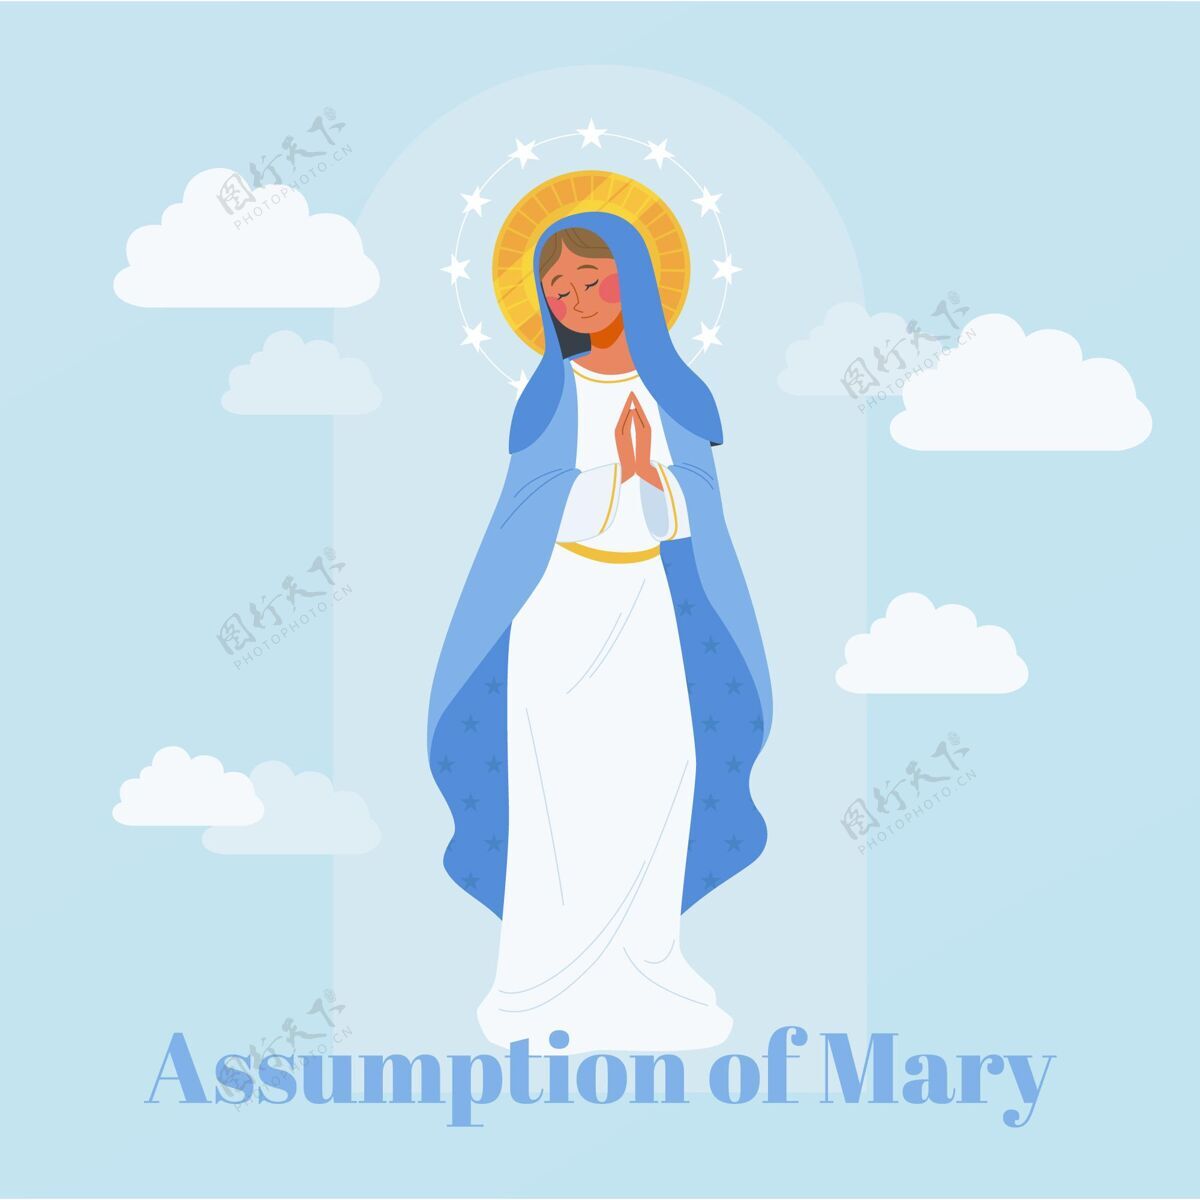 8月15日玛丽的平淡假设宗教基督教活动